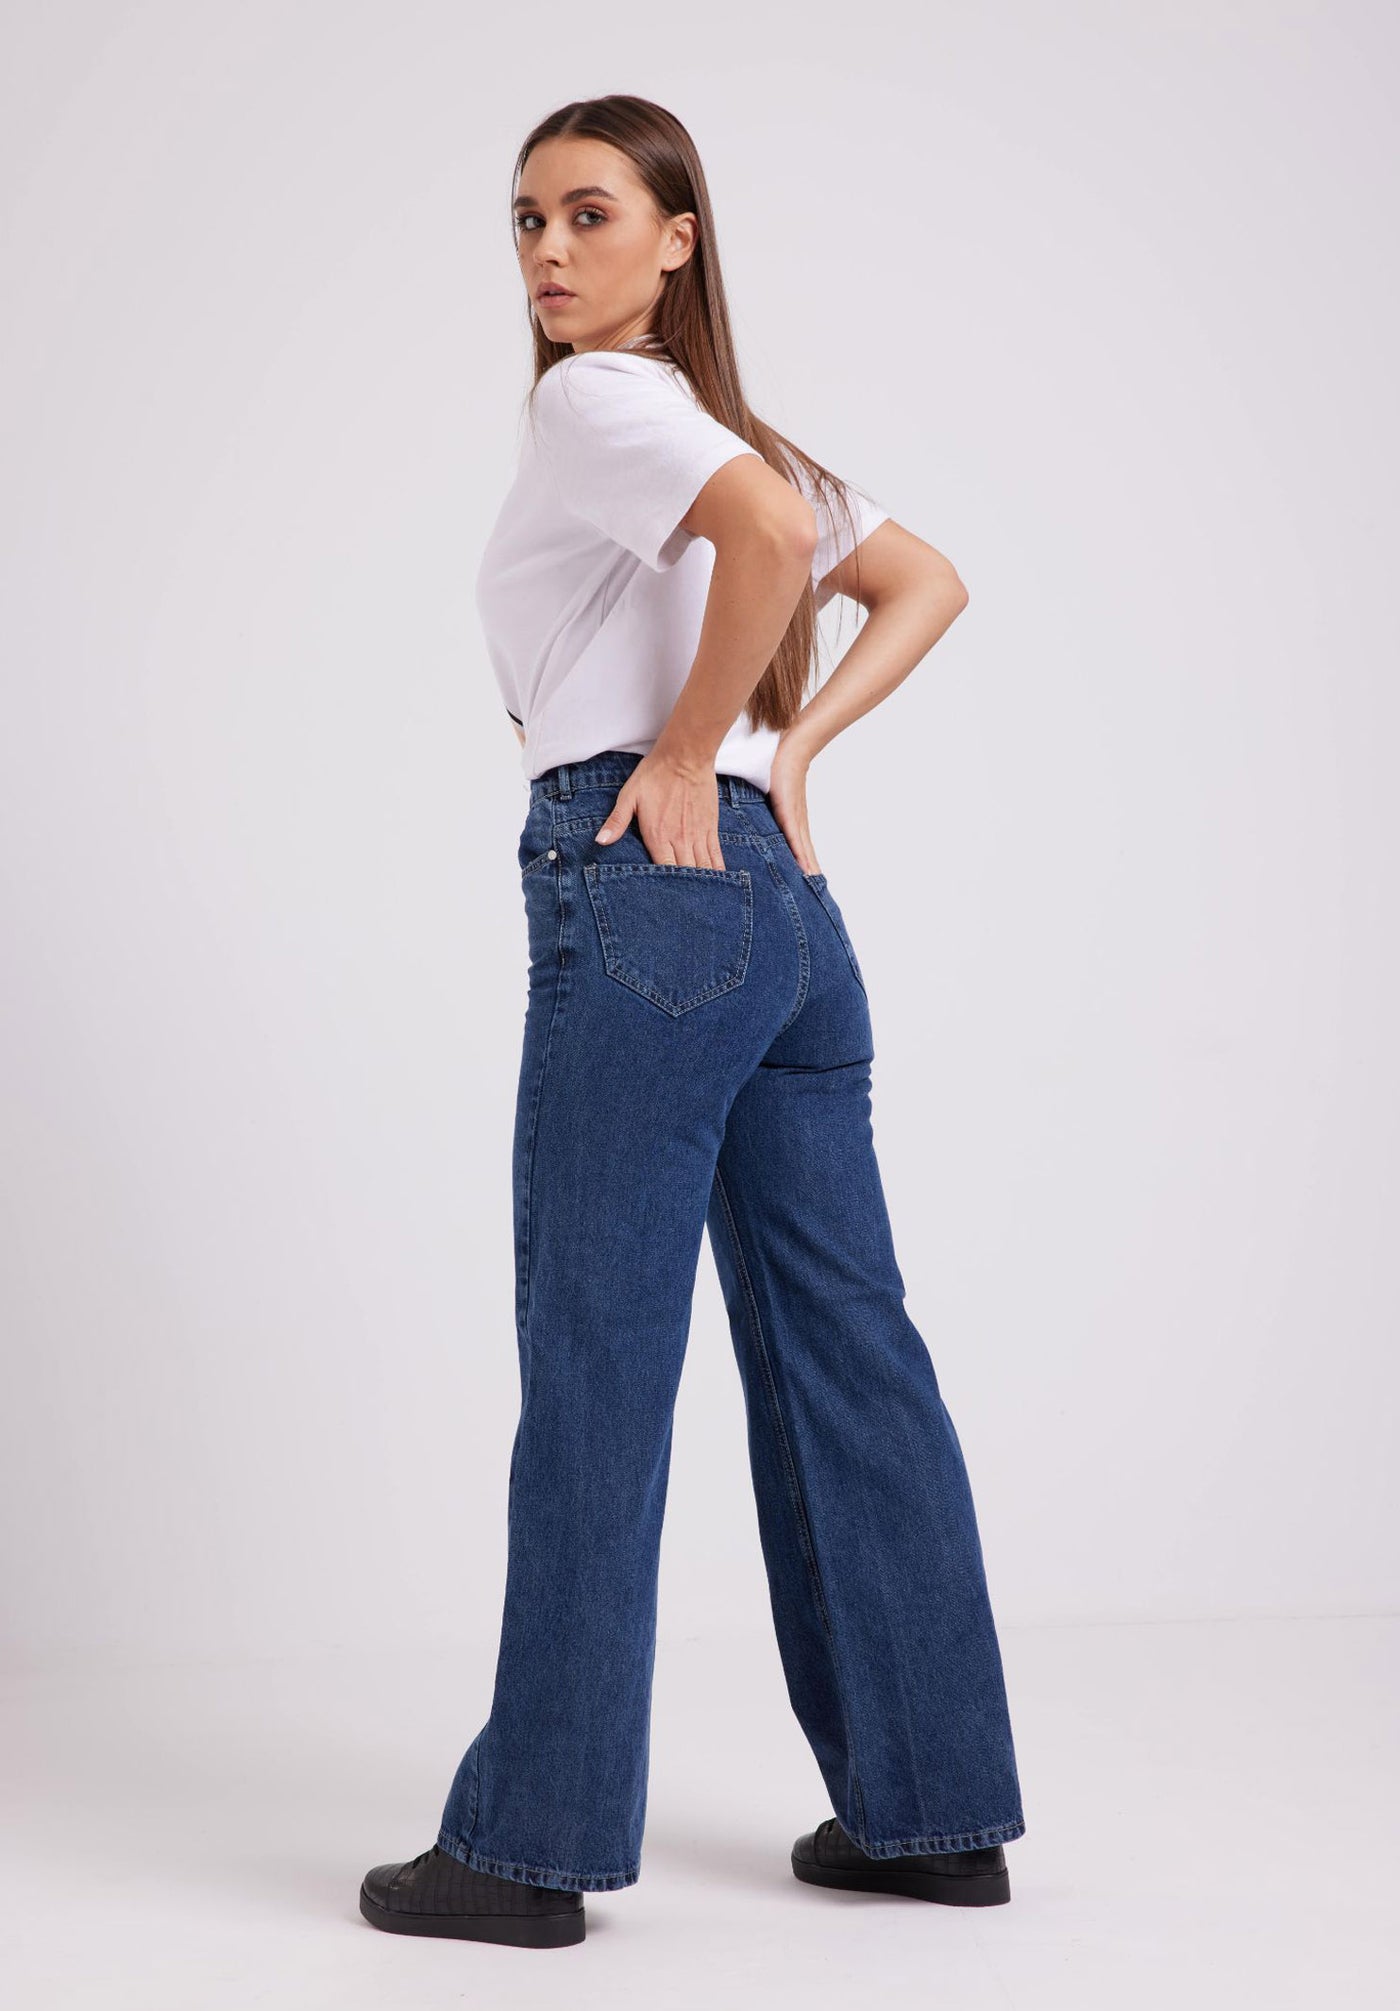 Jeans Pants - Mid Rise - Wide Leg - Blue